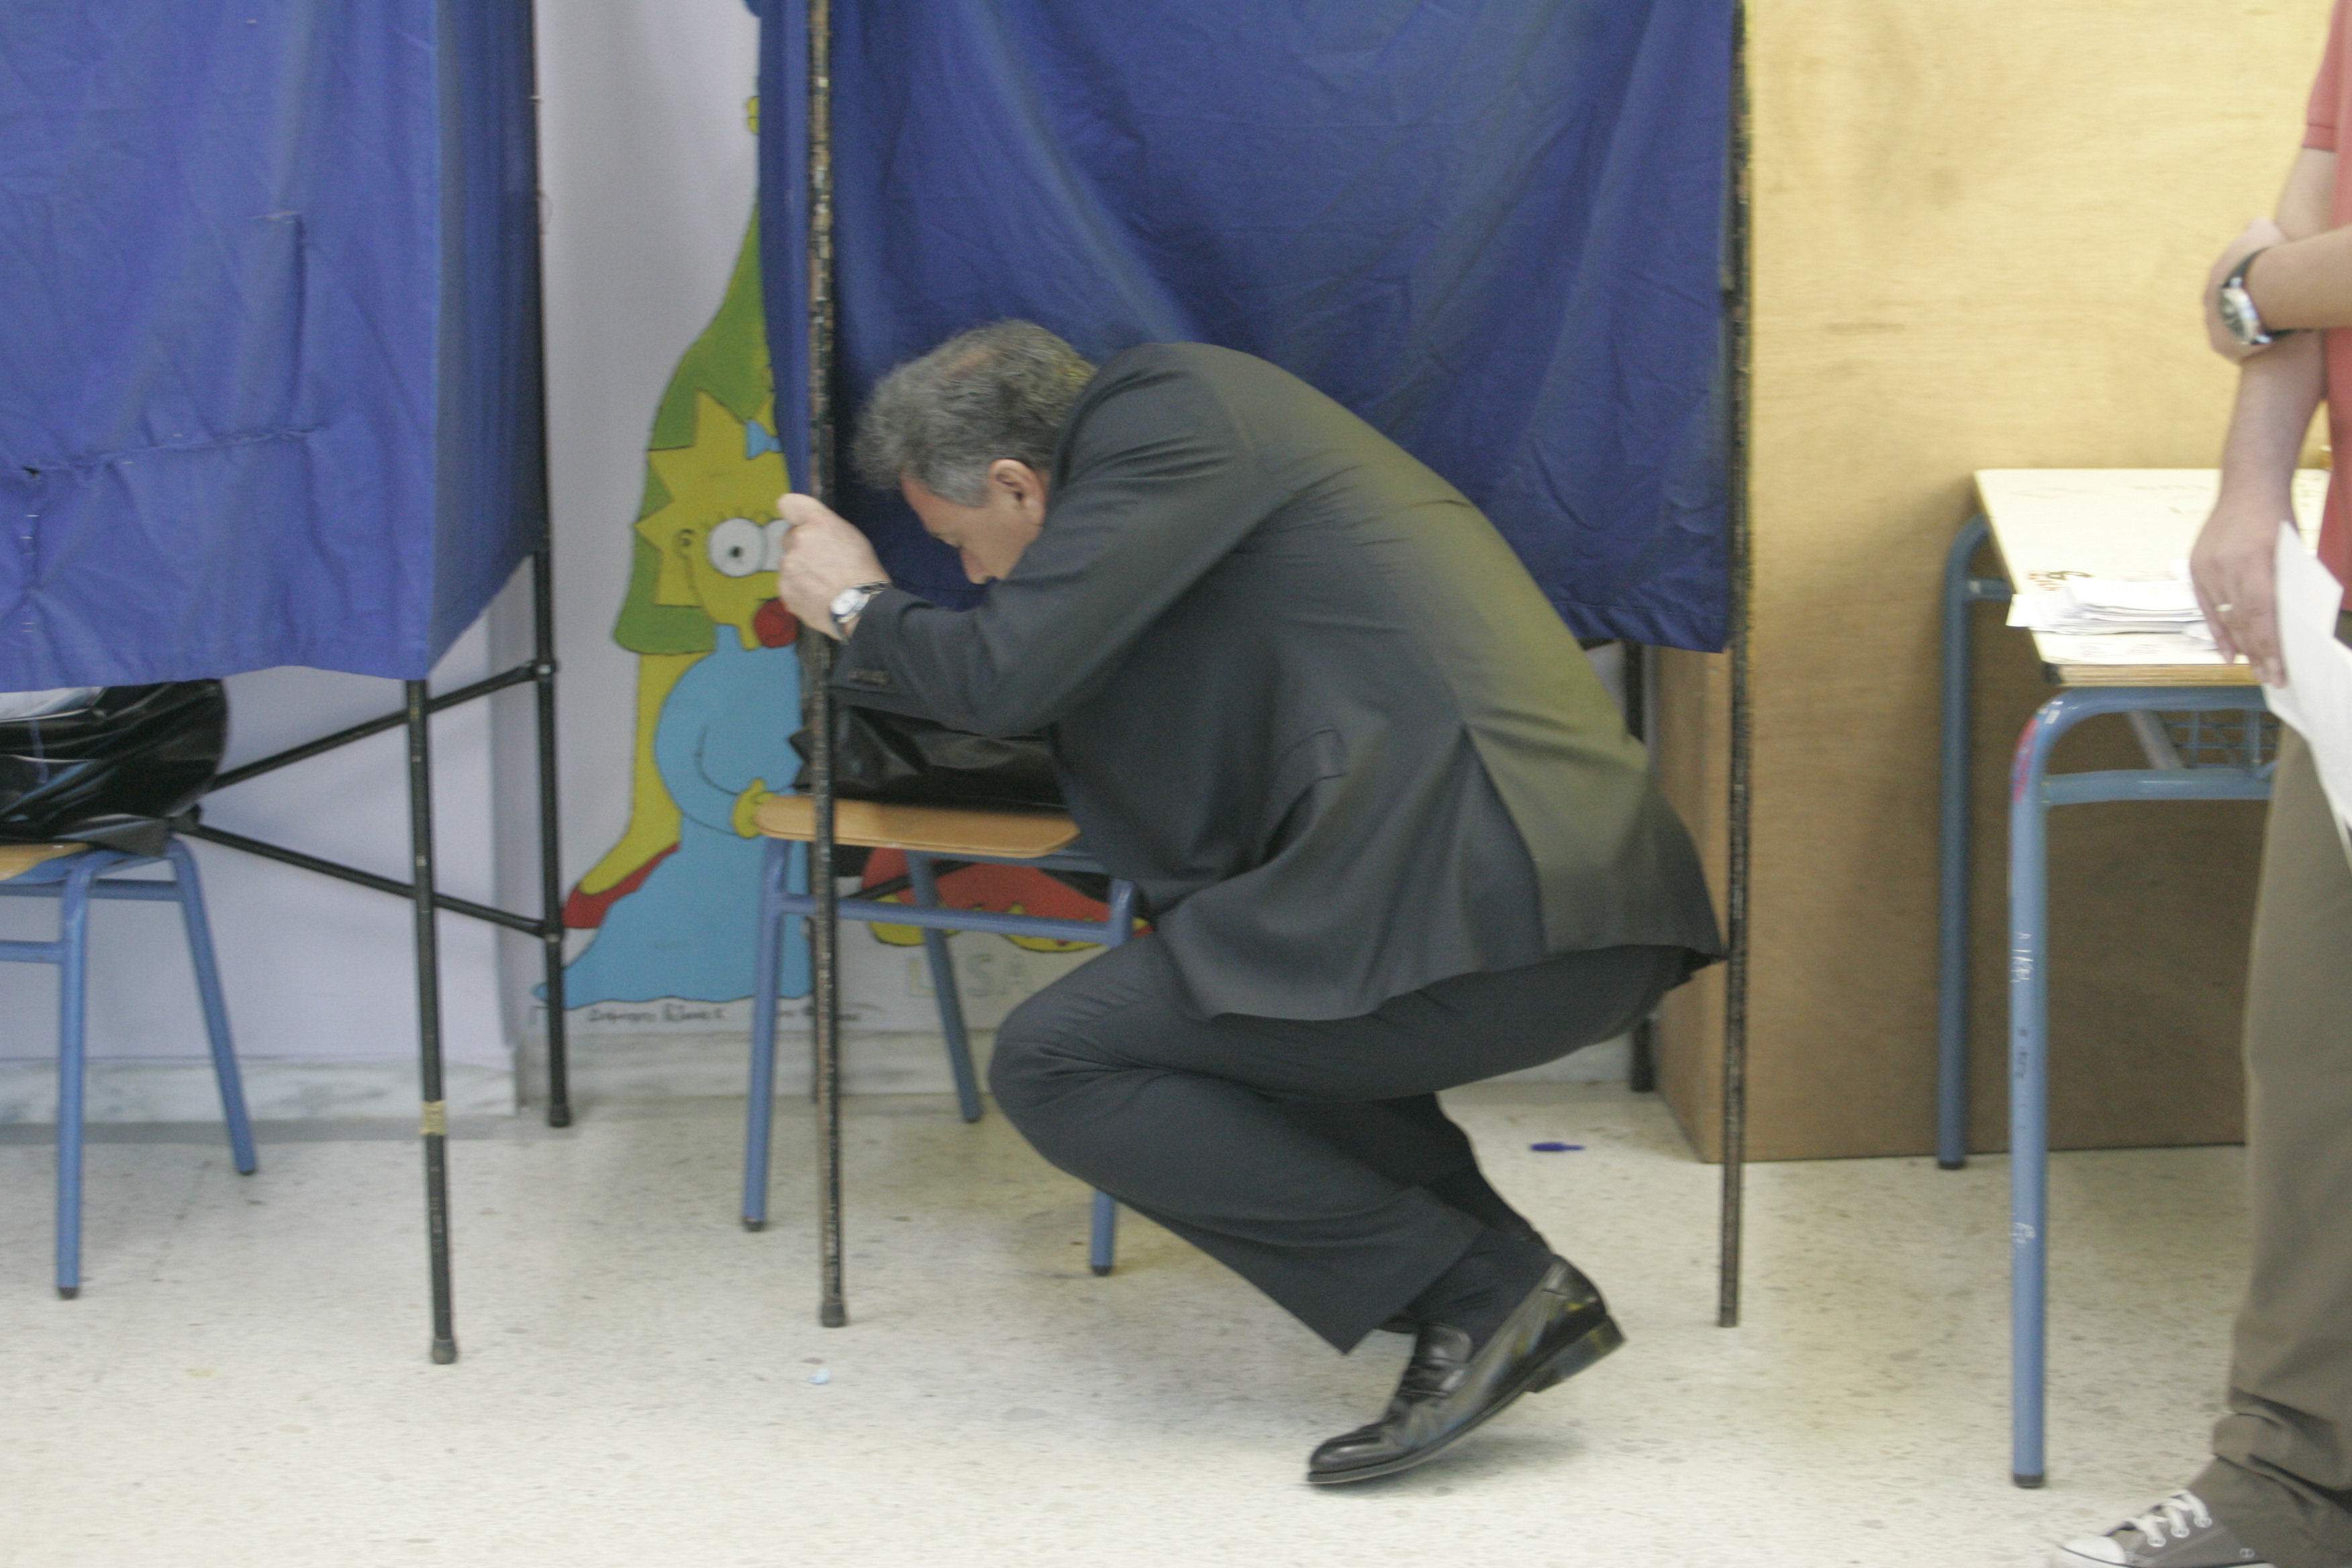 Πρωϊνή εκλογική γυμναστική για τον Γιάννη Σγουρό που του έπεσε ο φάκελος - ΦΩΤΟ EUROKINISSI